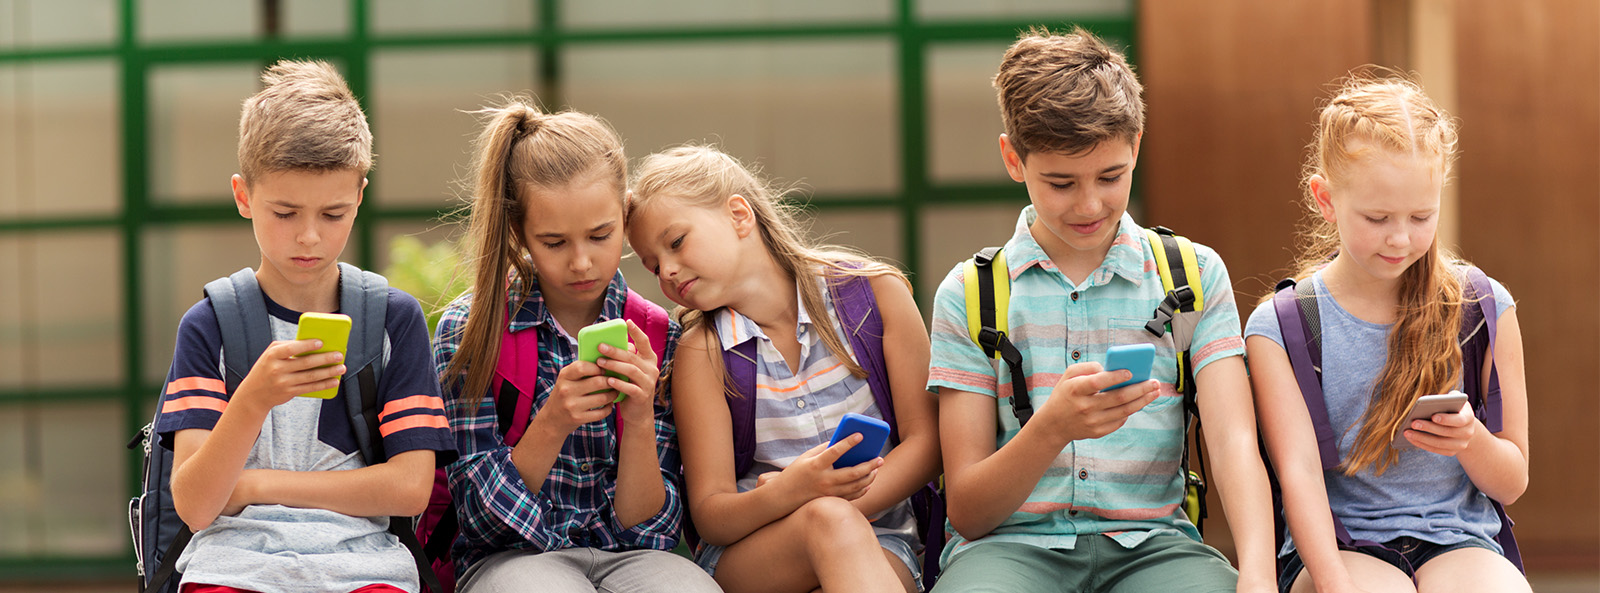 Gruppe von Kindern mit Smartphones